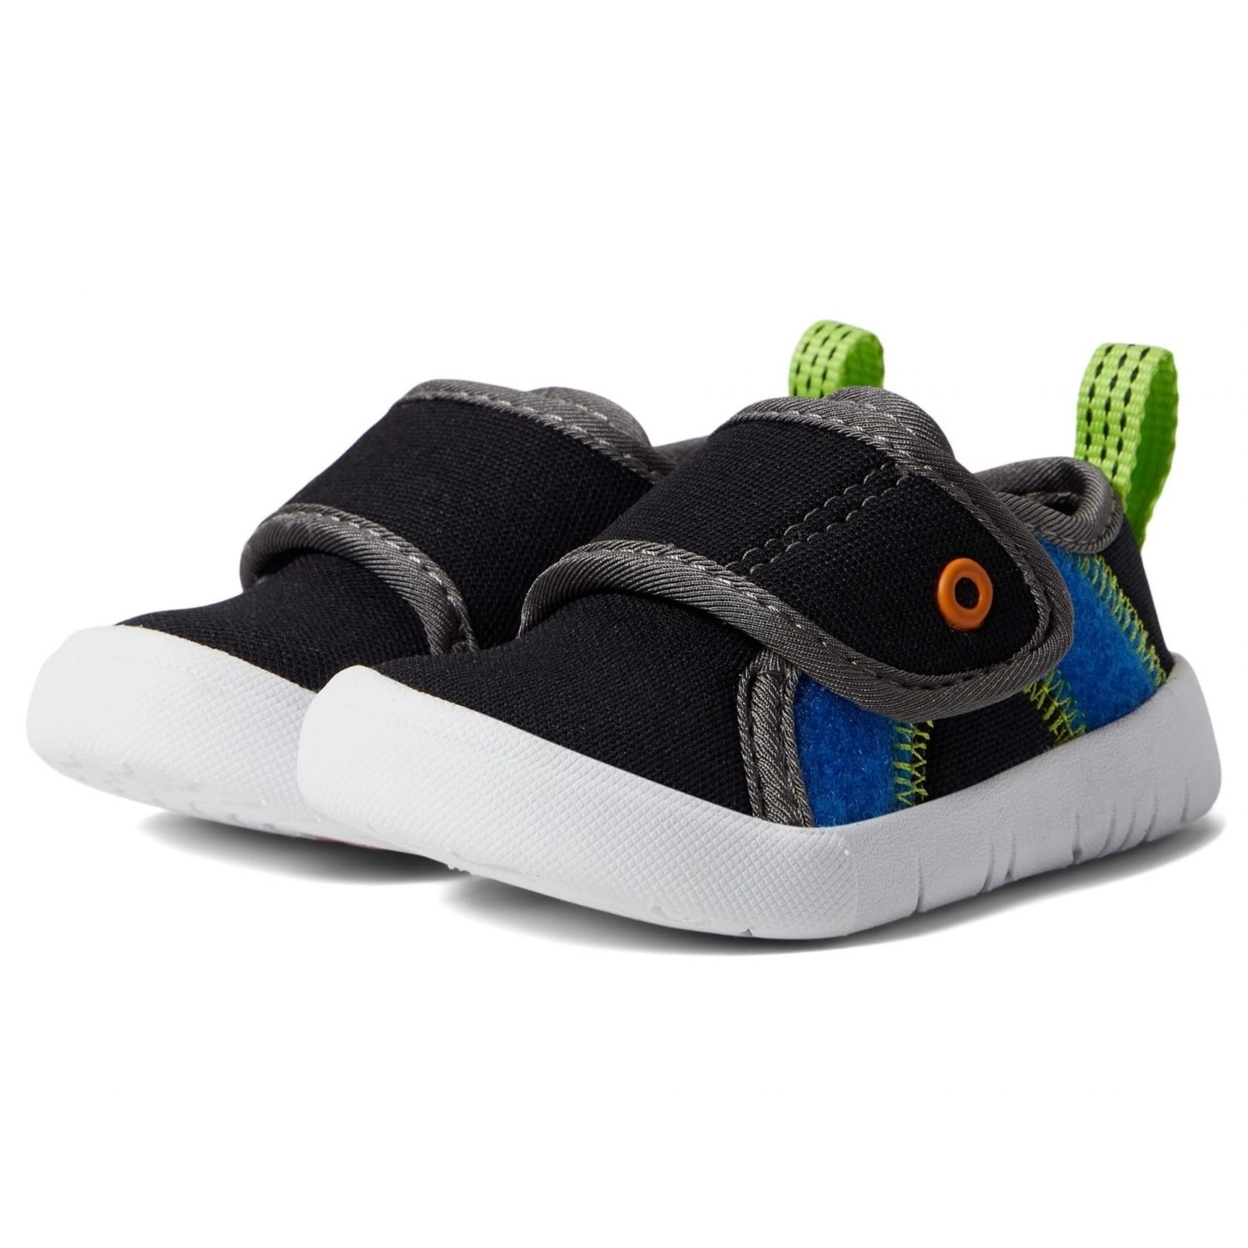 BOGS Unisex Baby Kicker Hook And Loop Shoe Sneaker Black Multi - 72811I-009 1 BLACK MULTI - BLACK MULTI, 5 Toddler